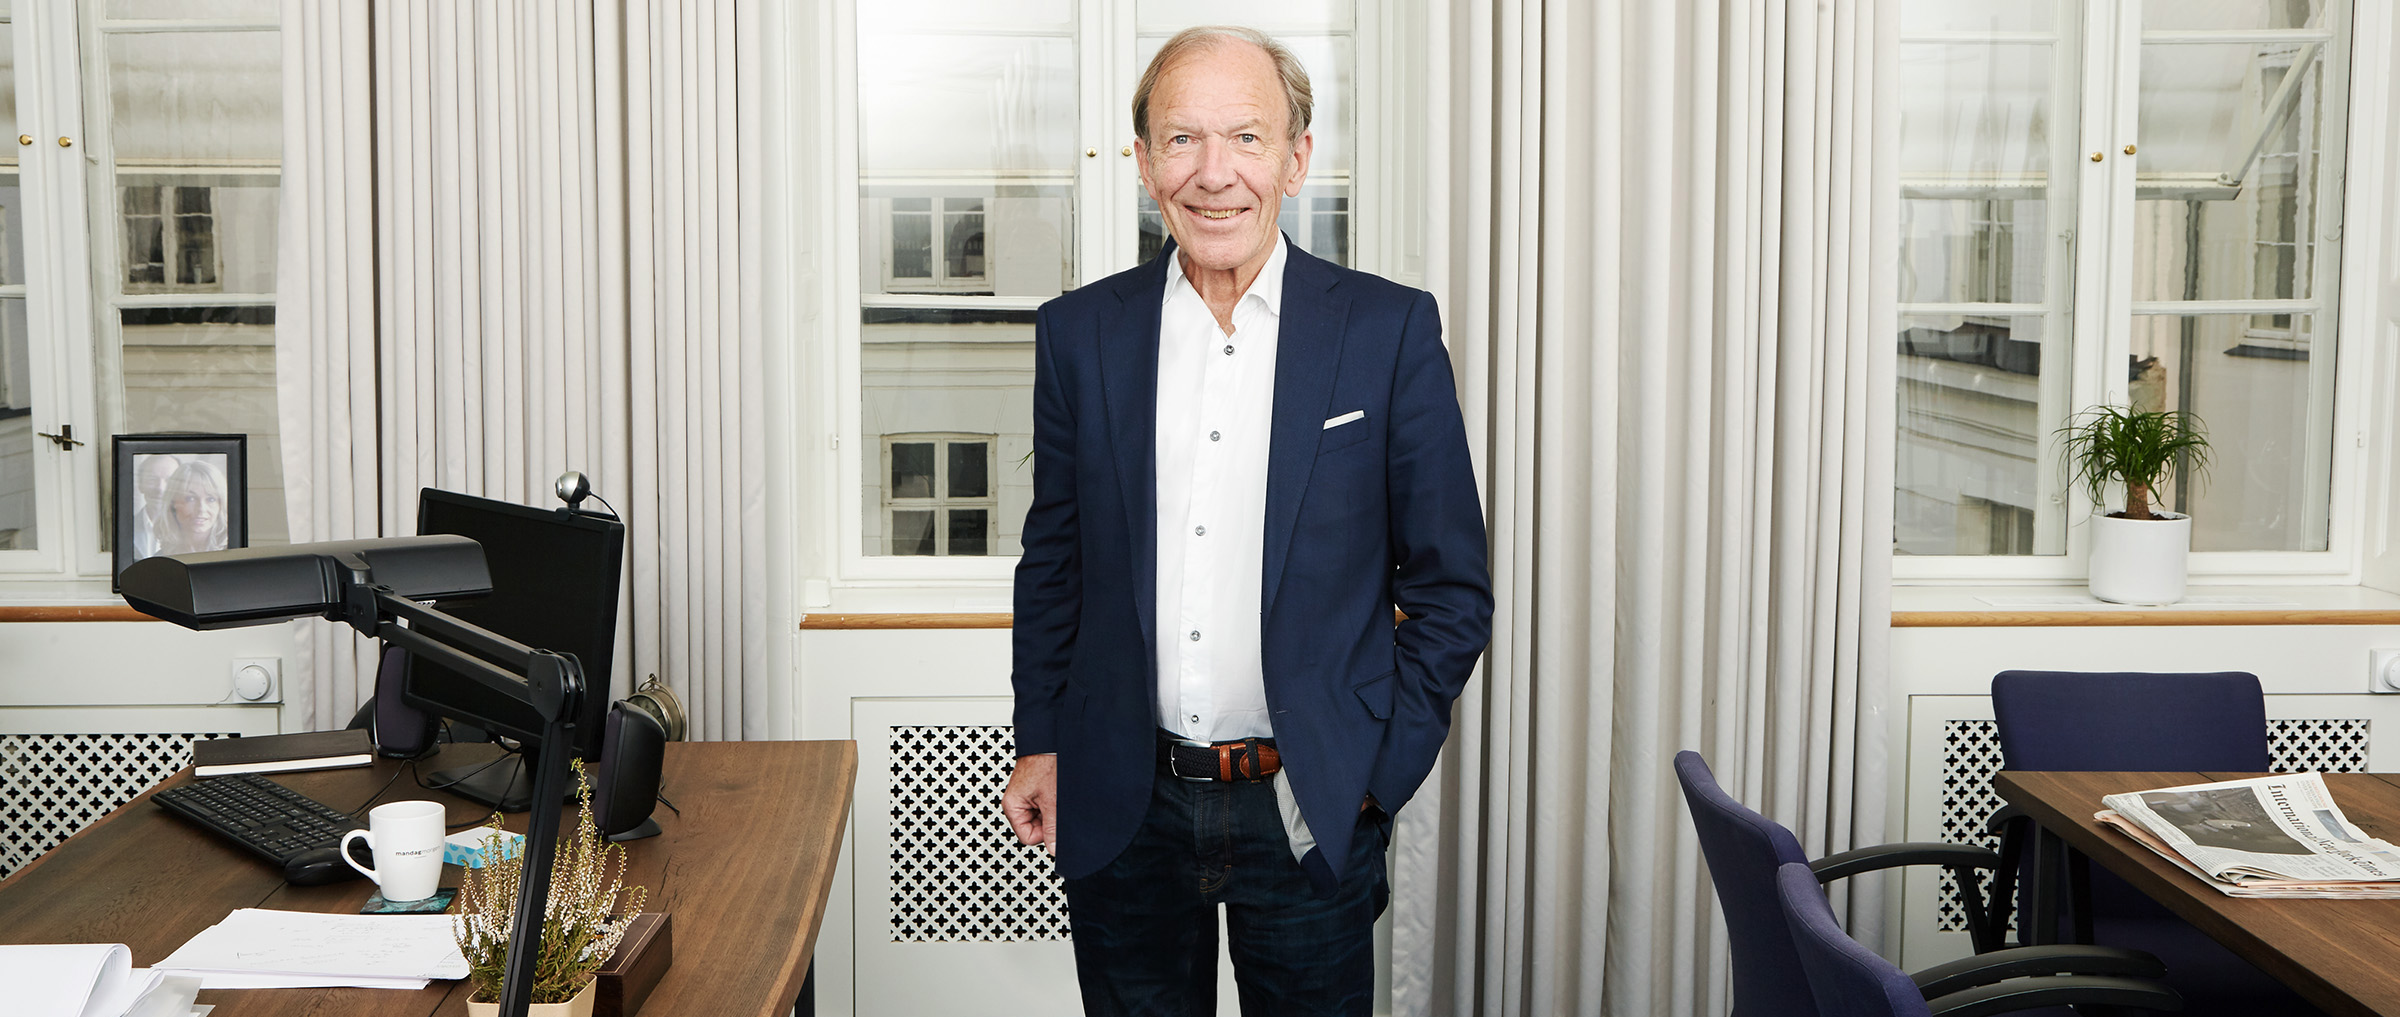 Erik Rasmussen, Sustania, CEO